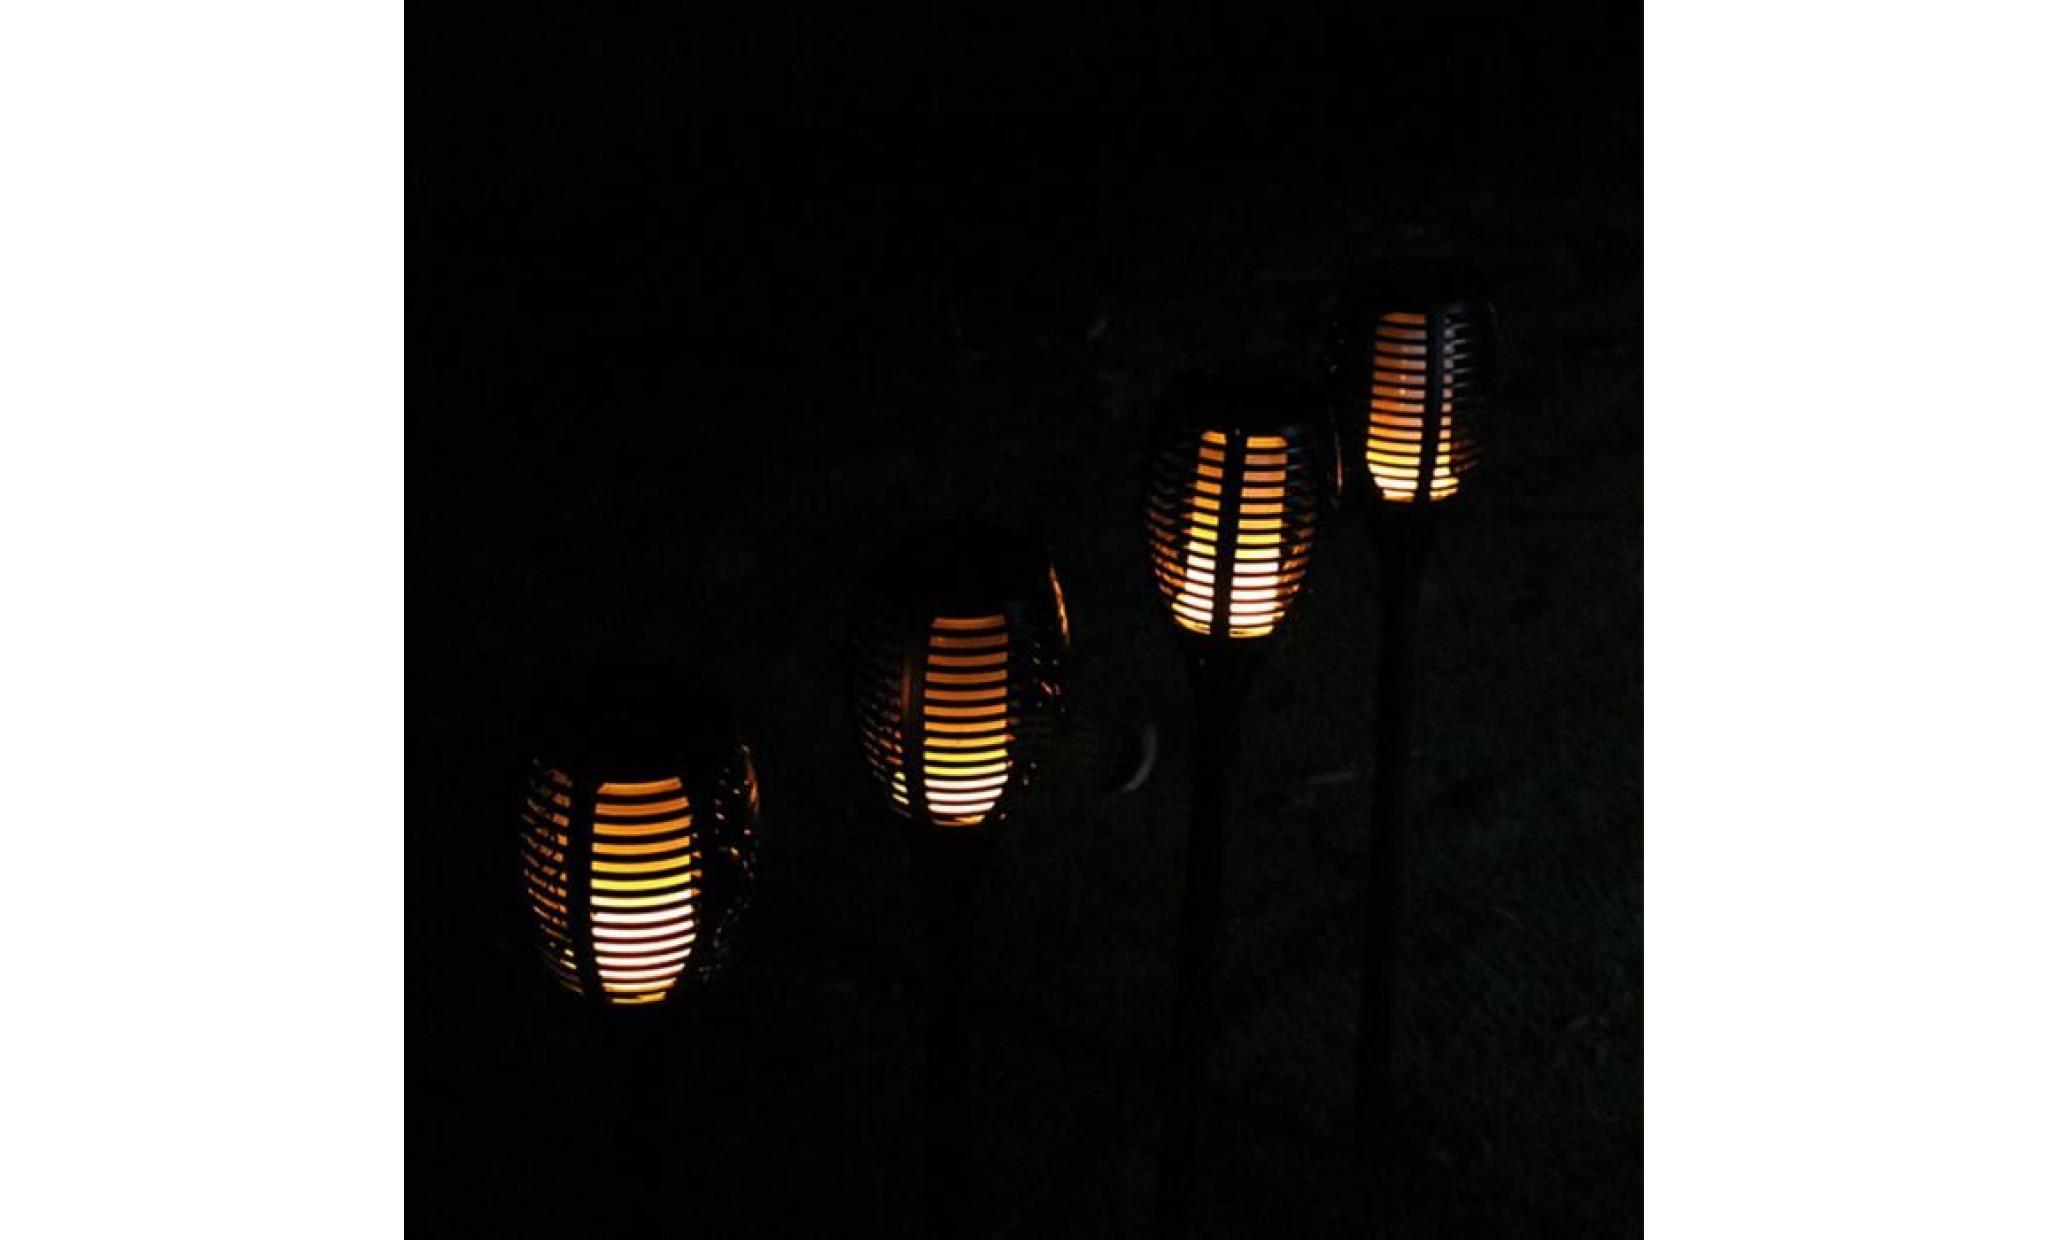 borne solaire 1 pcs solaire extérieure imperméable À l'eau lampes de lanterne lamp pathways yard patio 019 pas cher